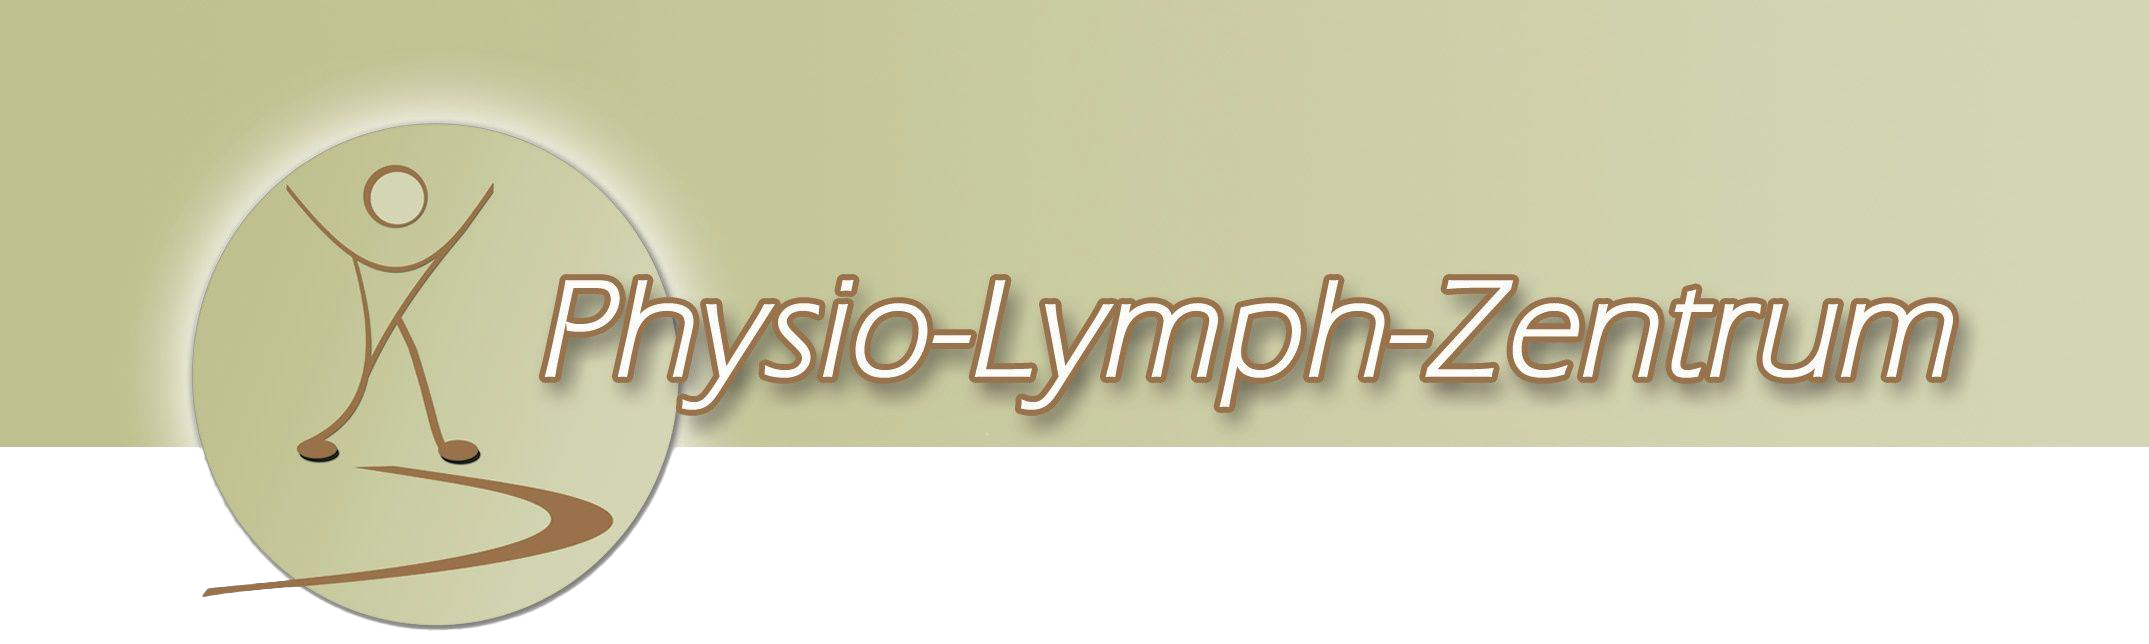 Physio-Lymph-Zentrum